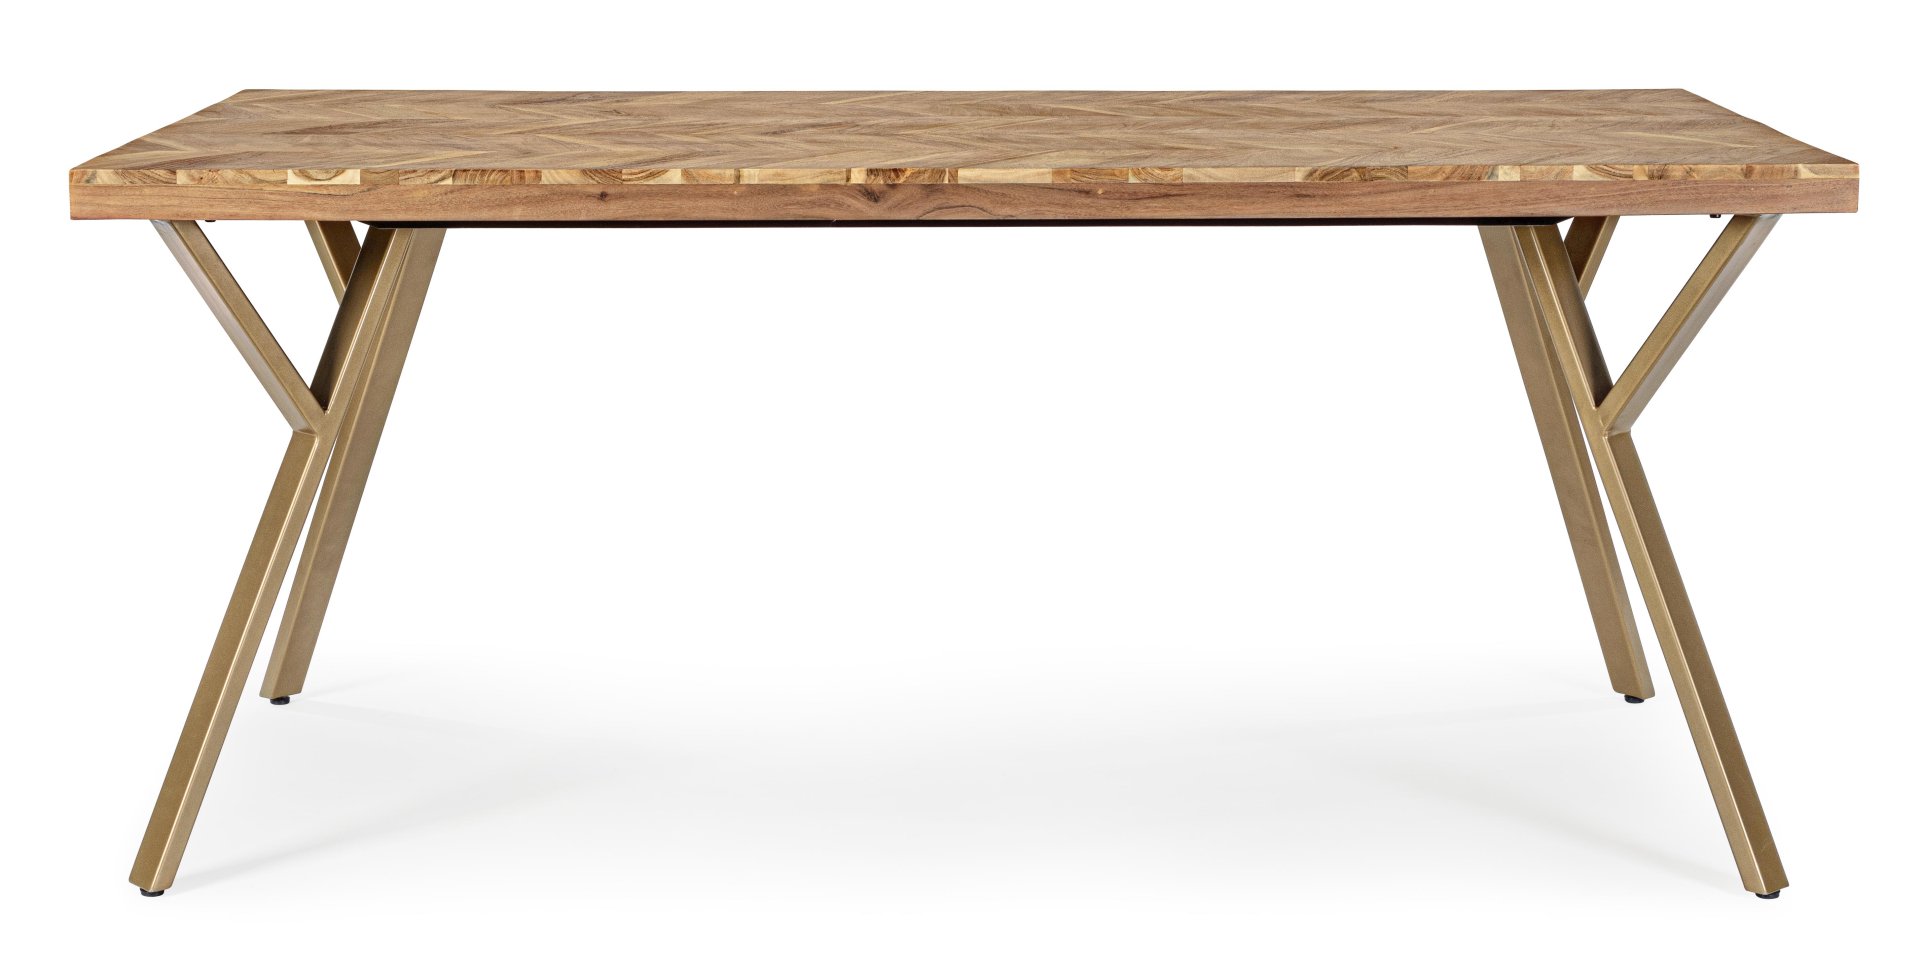 Der Esstisch Raida überzeugt mit seinem moderndem Design. Gefertigt wurde er aus Akazienholz, welches einen natürlichen Farbton besitzt. Das Gestell des Tisches ist aus Metall und ist in eine goldene Farbe. Der Tisch besitzt eine Breite von 160 cm.